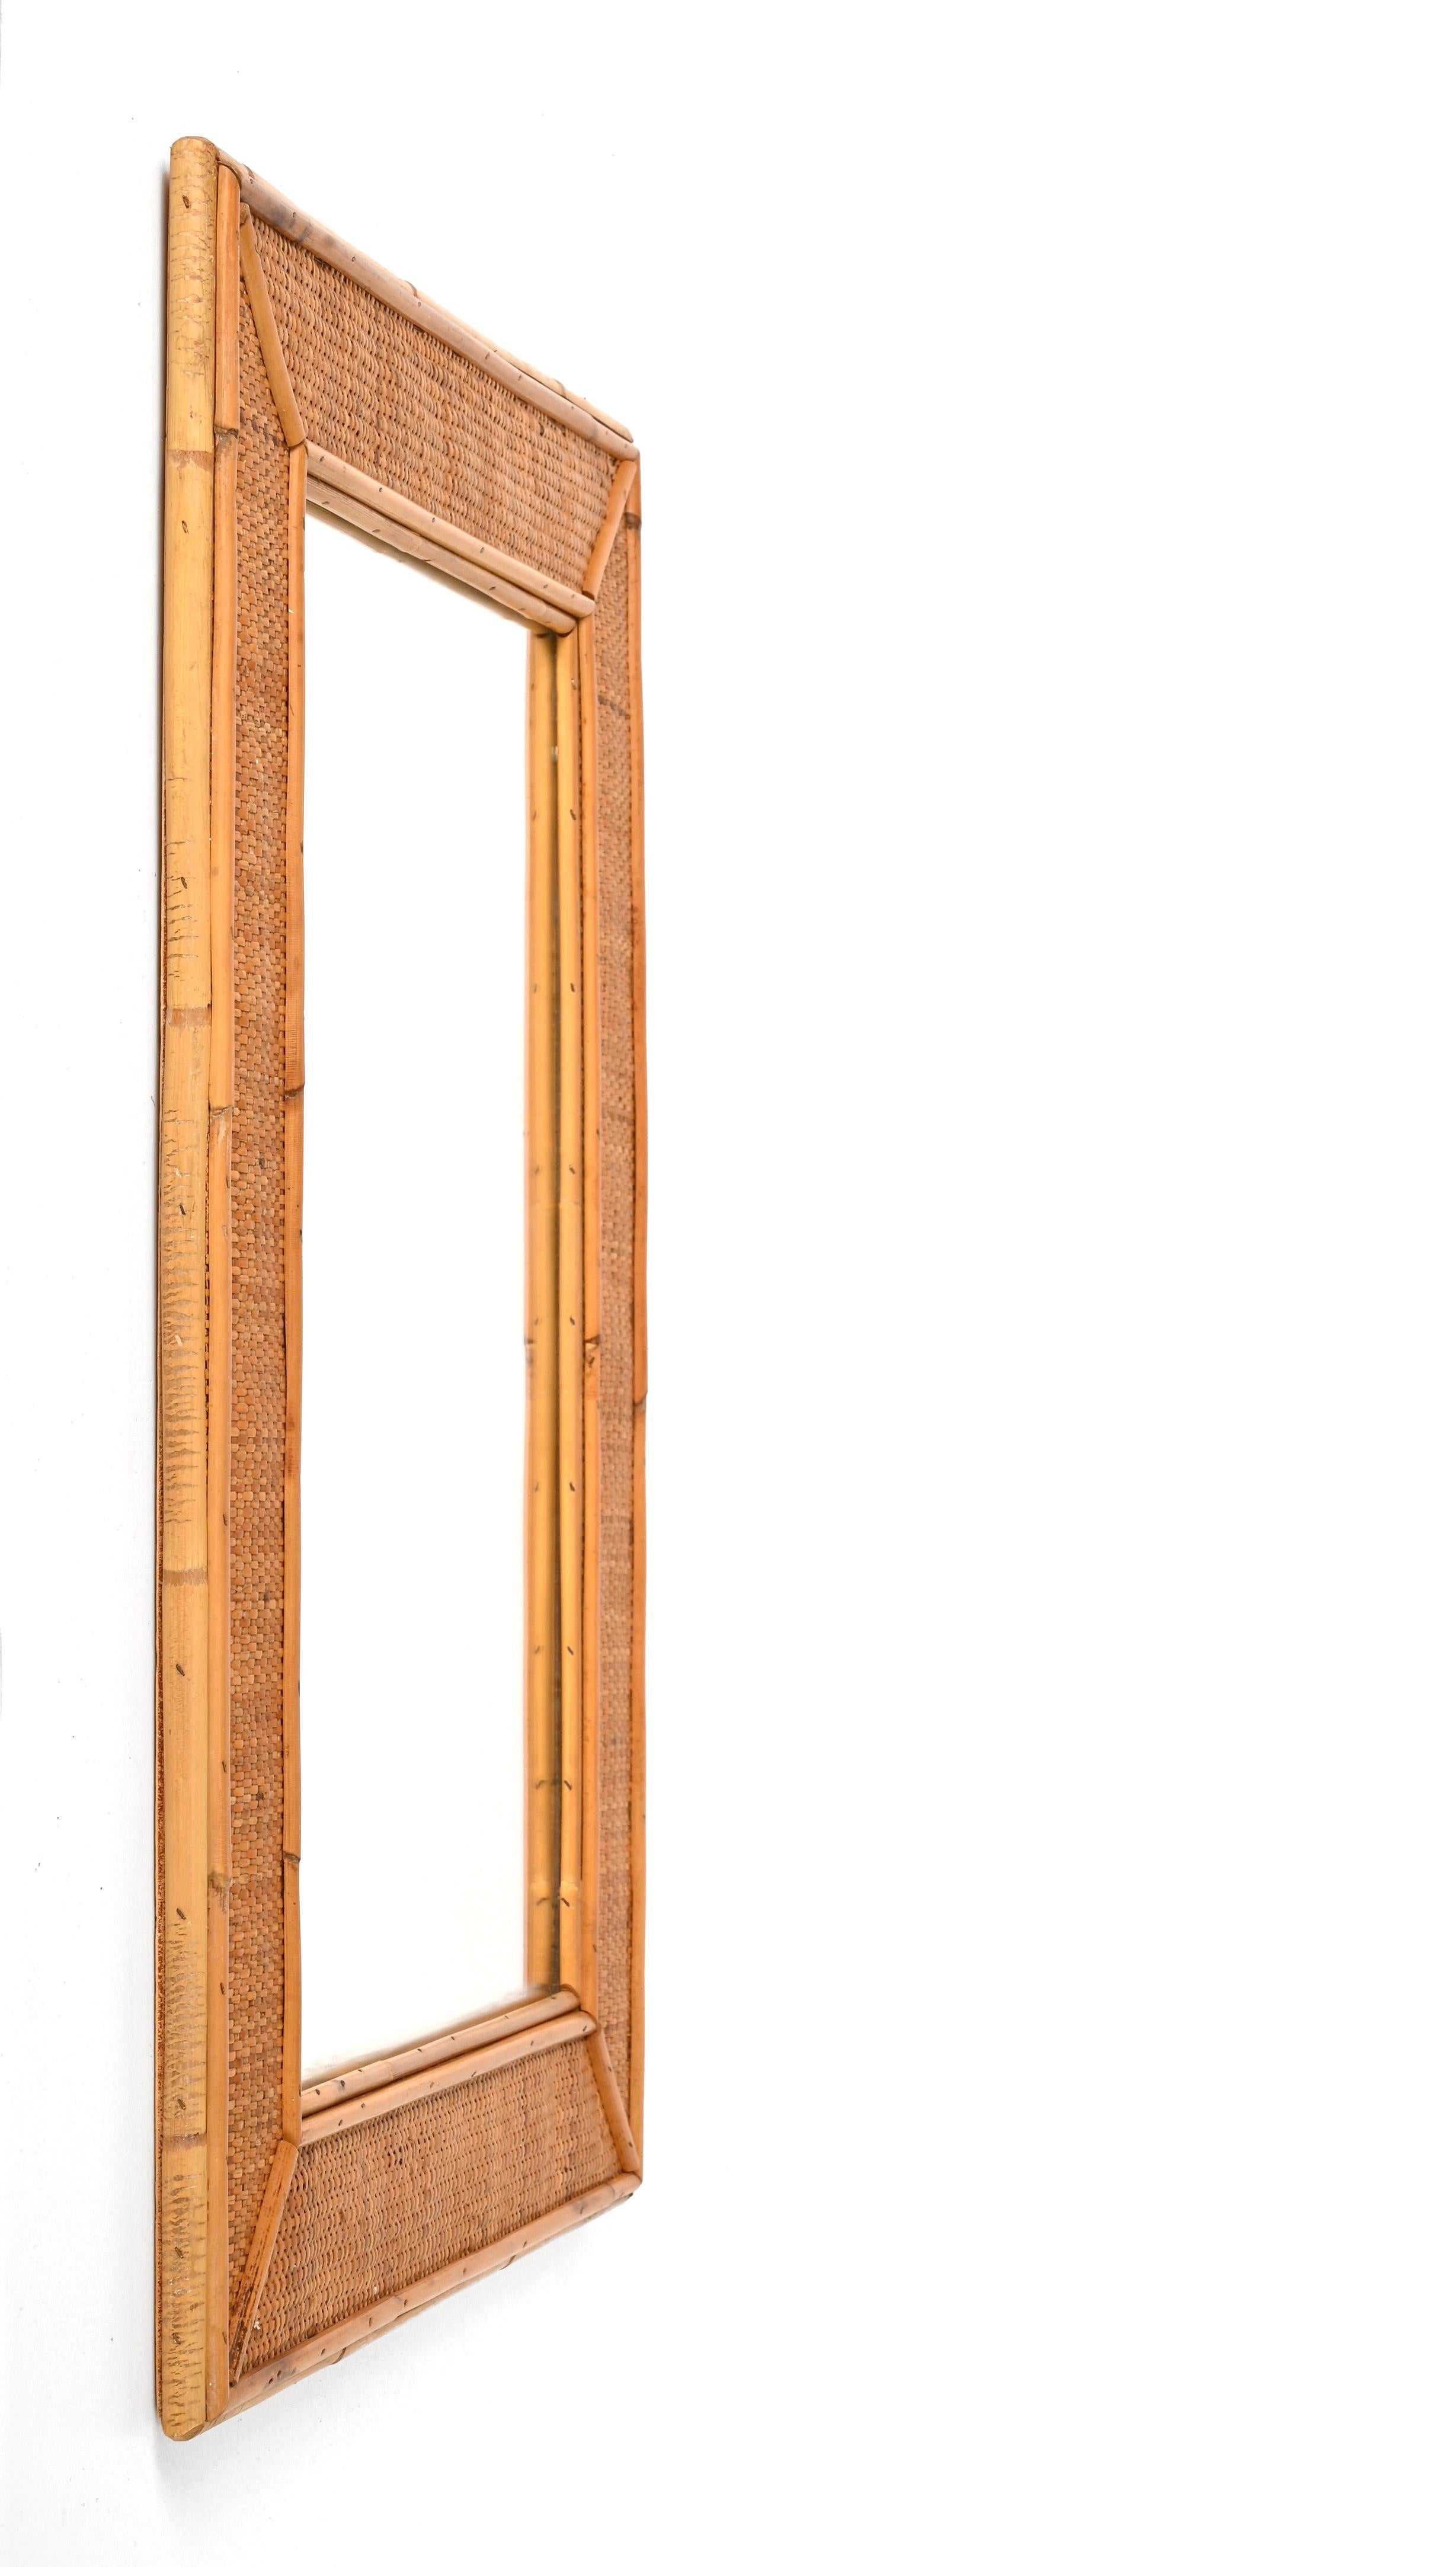 Spectaculaire miroir rectangulaire en bambou et osier tressé du milieu du siècle dernier. Cet objet exceptionnel a été produit en Italie dans les années 1970.

Cette pièce est incroyable grâce à sa structure complexe : elle a une partie interne